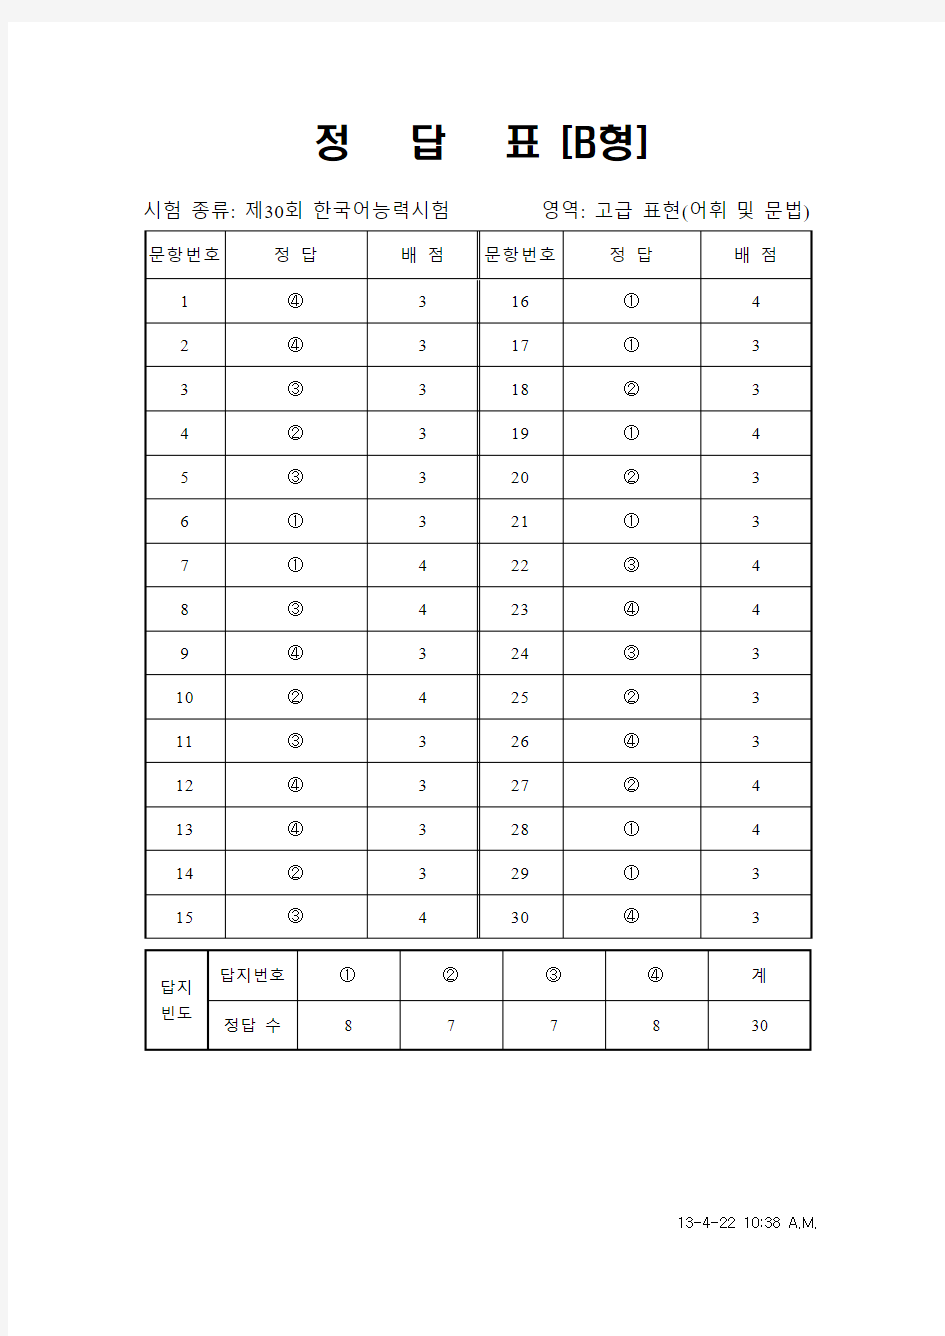 韩国语能力考试(TOPIK)真题资料【30】30届高级词汇和语法答案